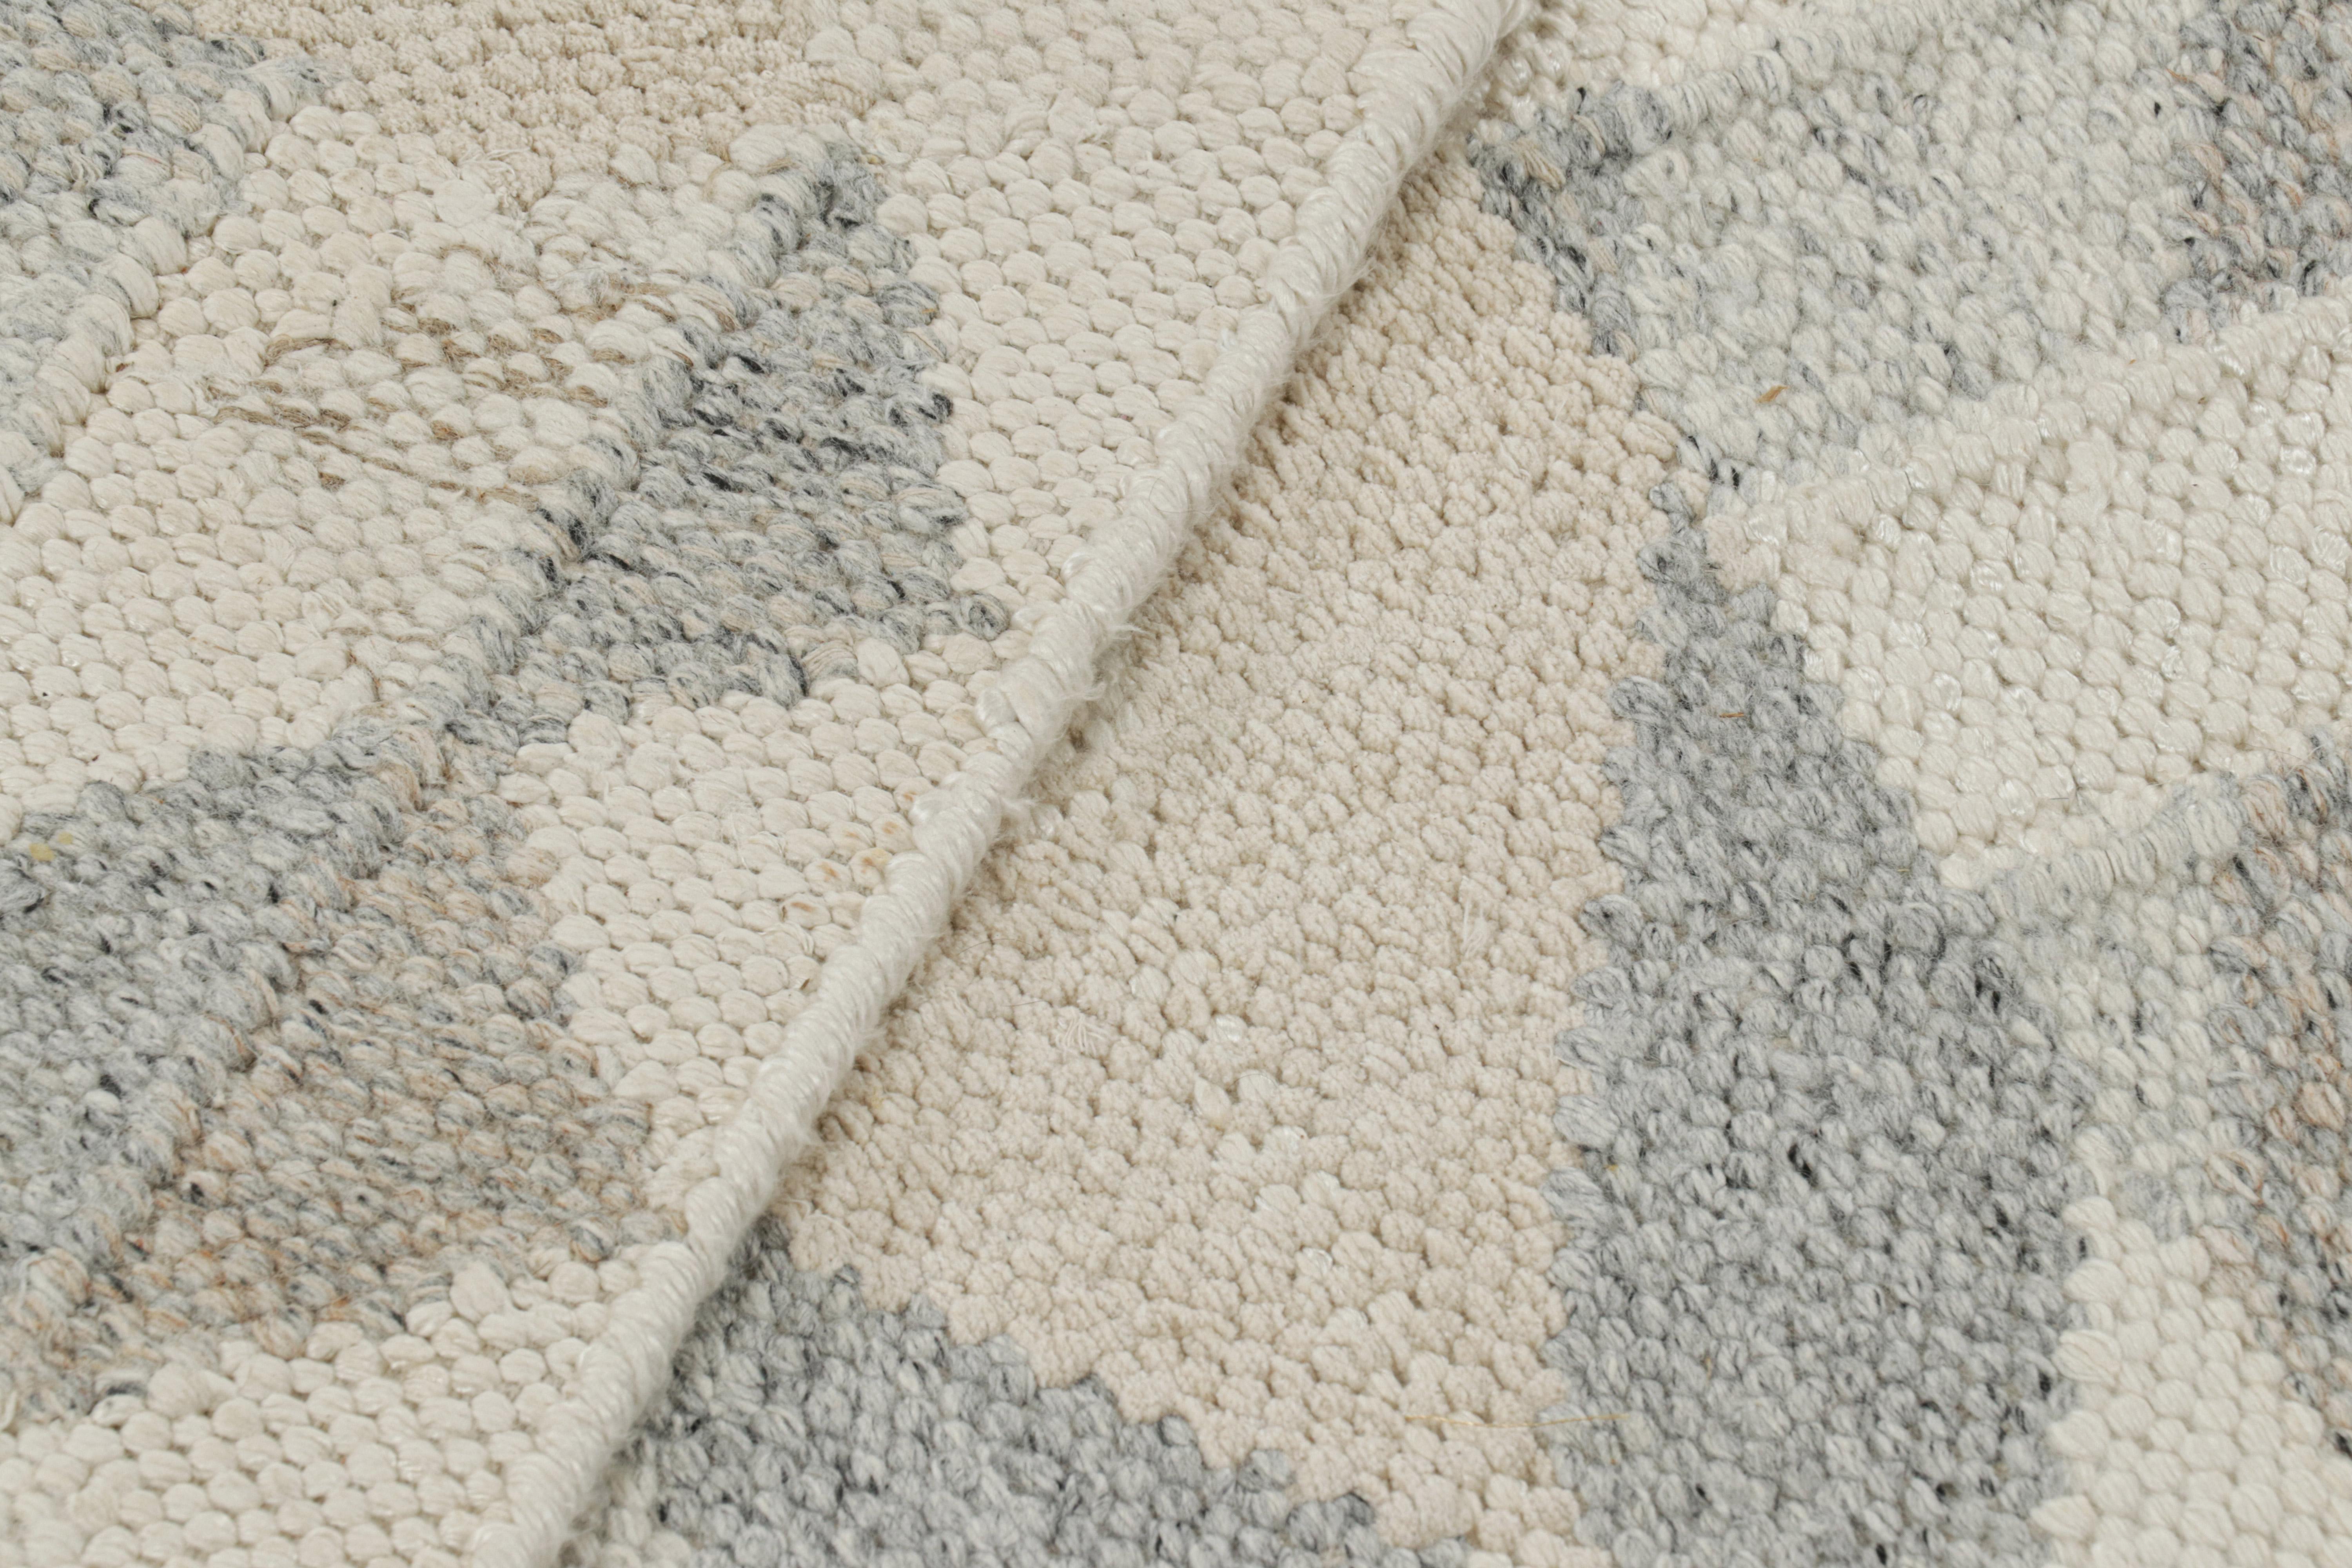 Laine Rug & Kilim's Scandinavian Style Rug in Gray Beige and White Geometric Patterns (tapis de style scandinave à motifs géométriques gris, beige et blancs) en vente